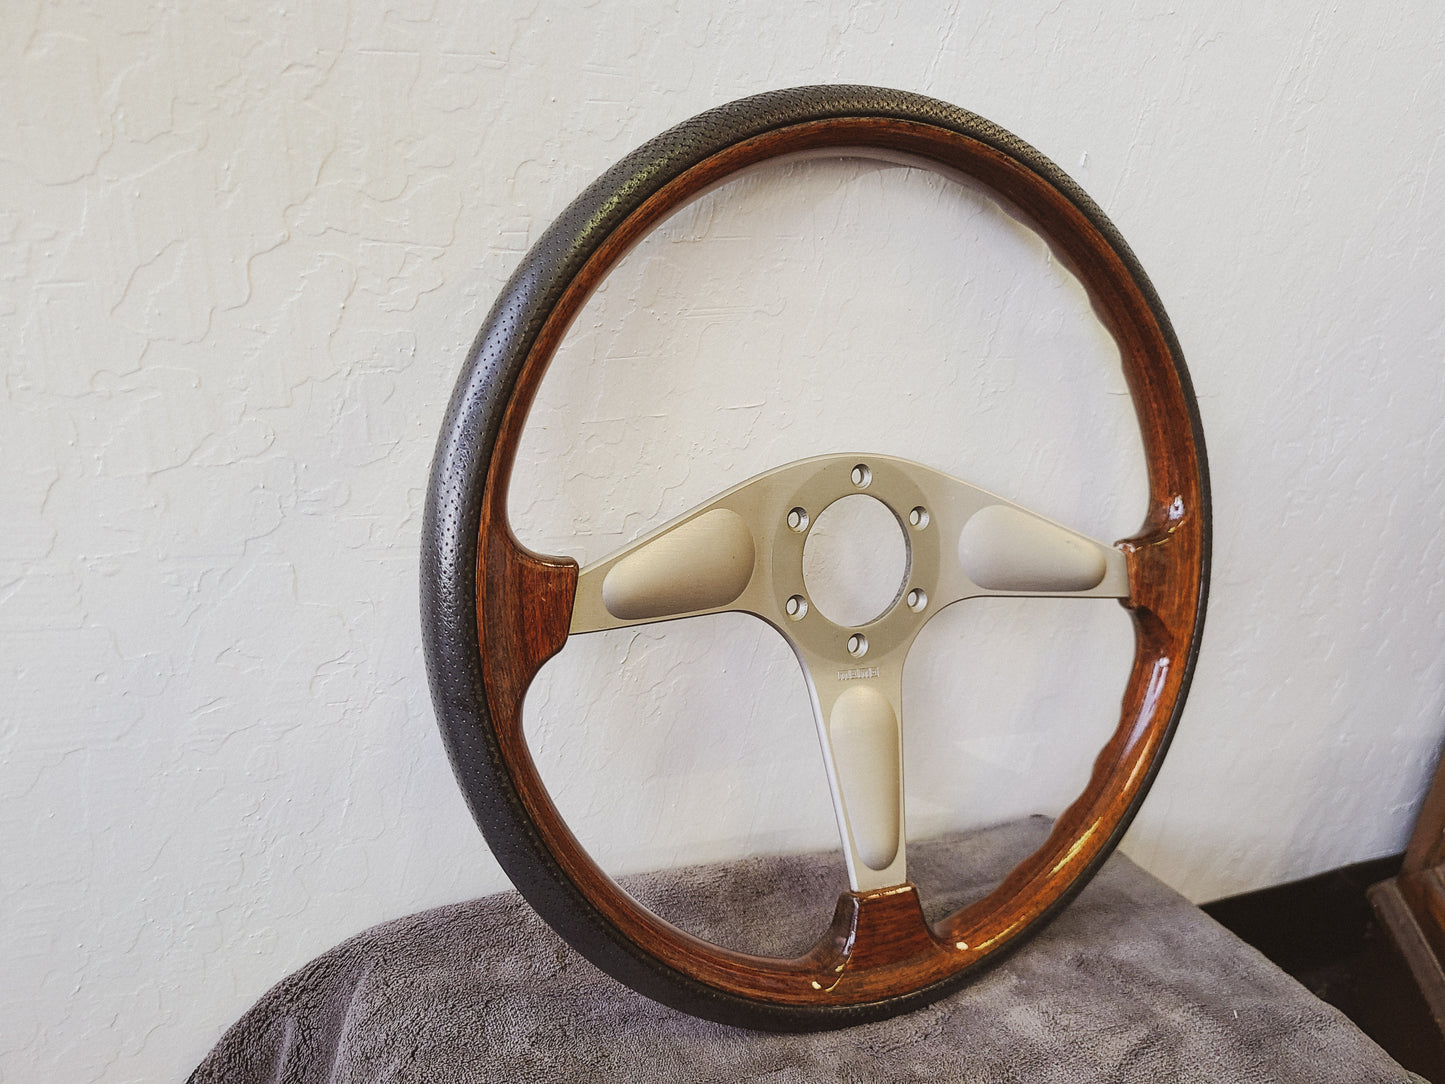 Momo 3 spoke wood+leather 365mm steering wheel